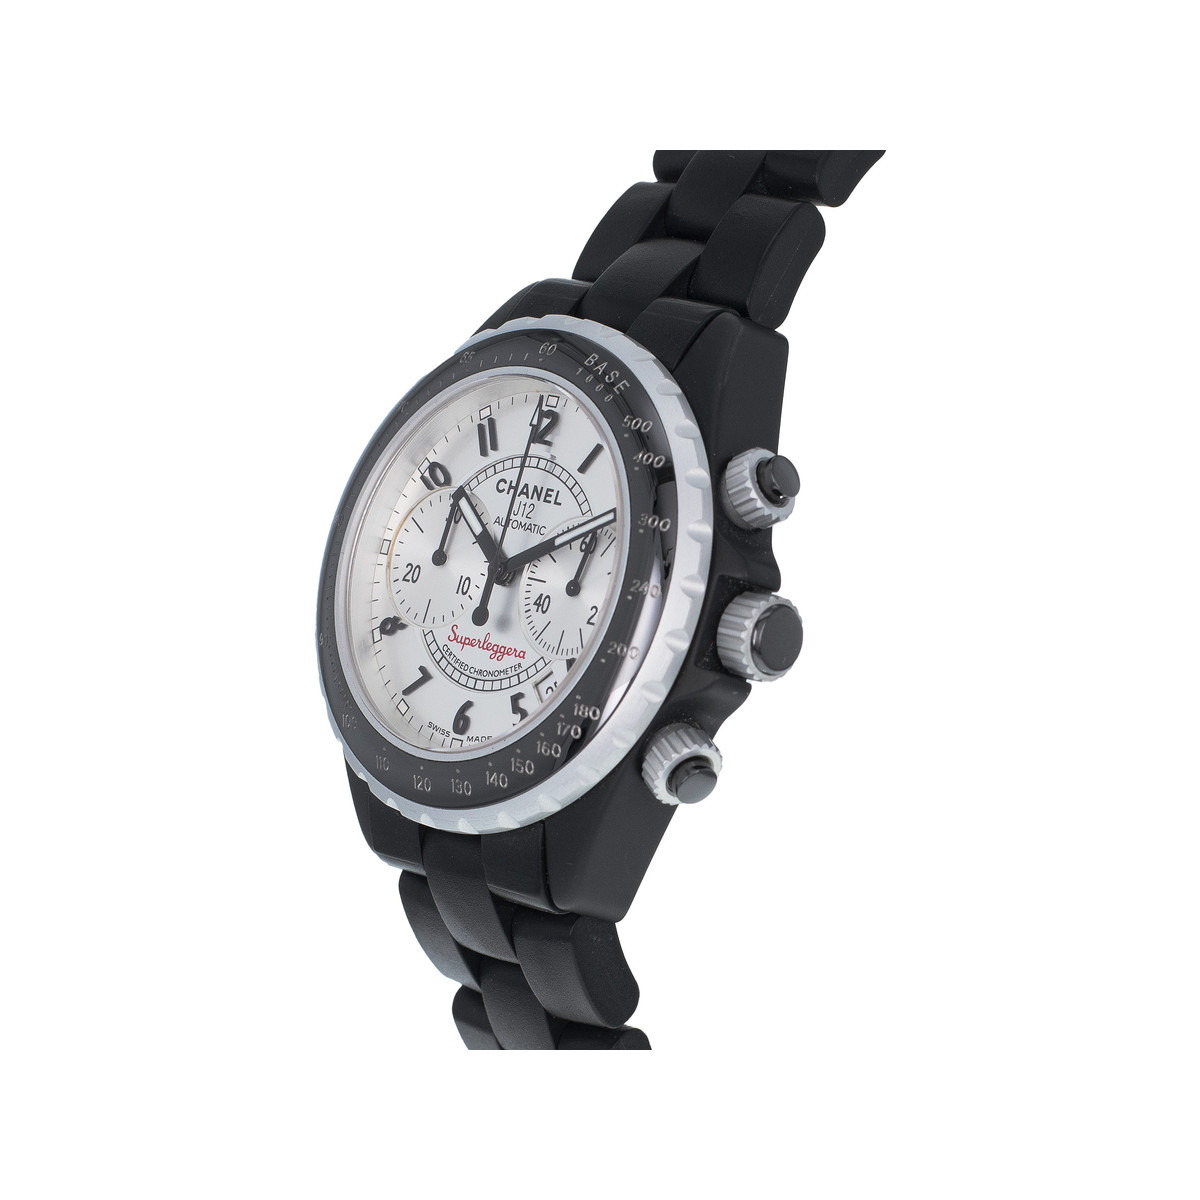 Montre d'occasion Chanel J12 Superleggera mixte chronographe céramique noire - vue 2